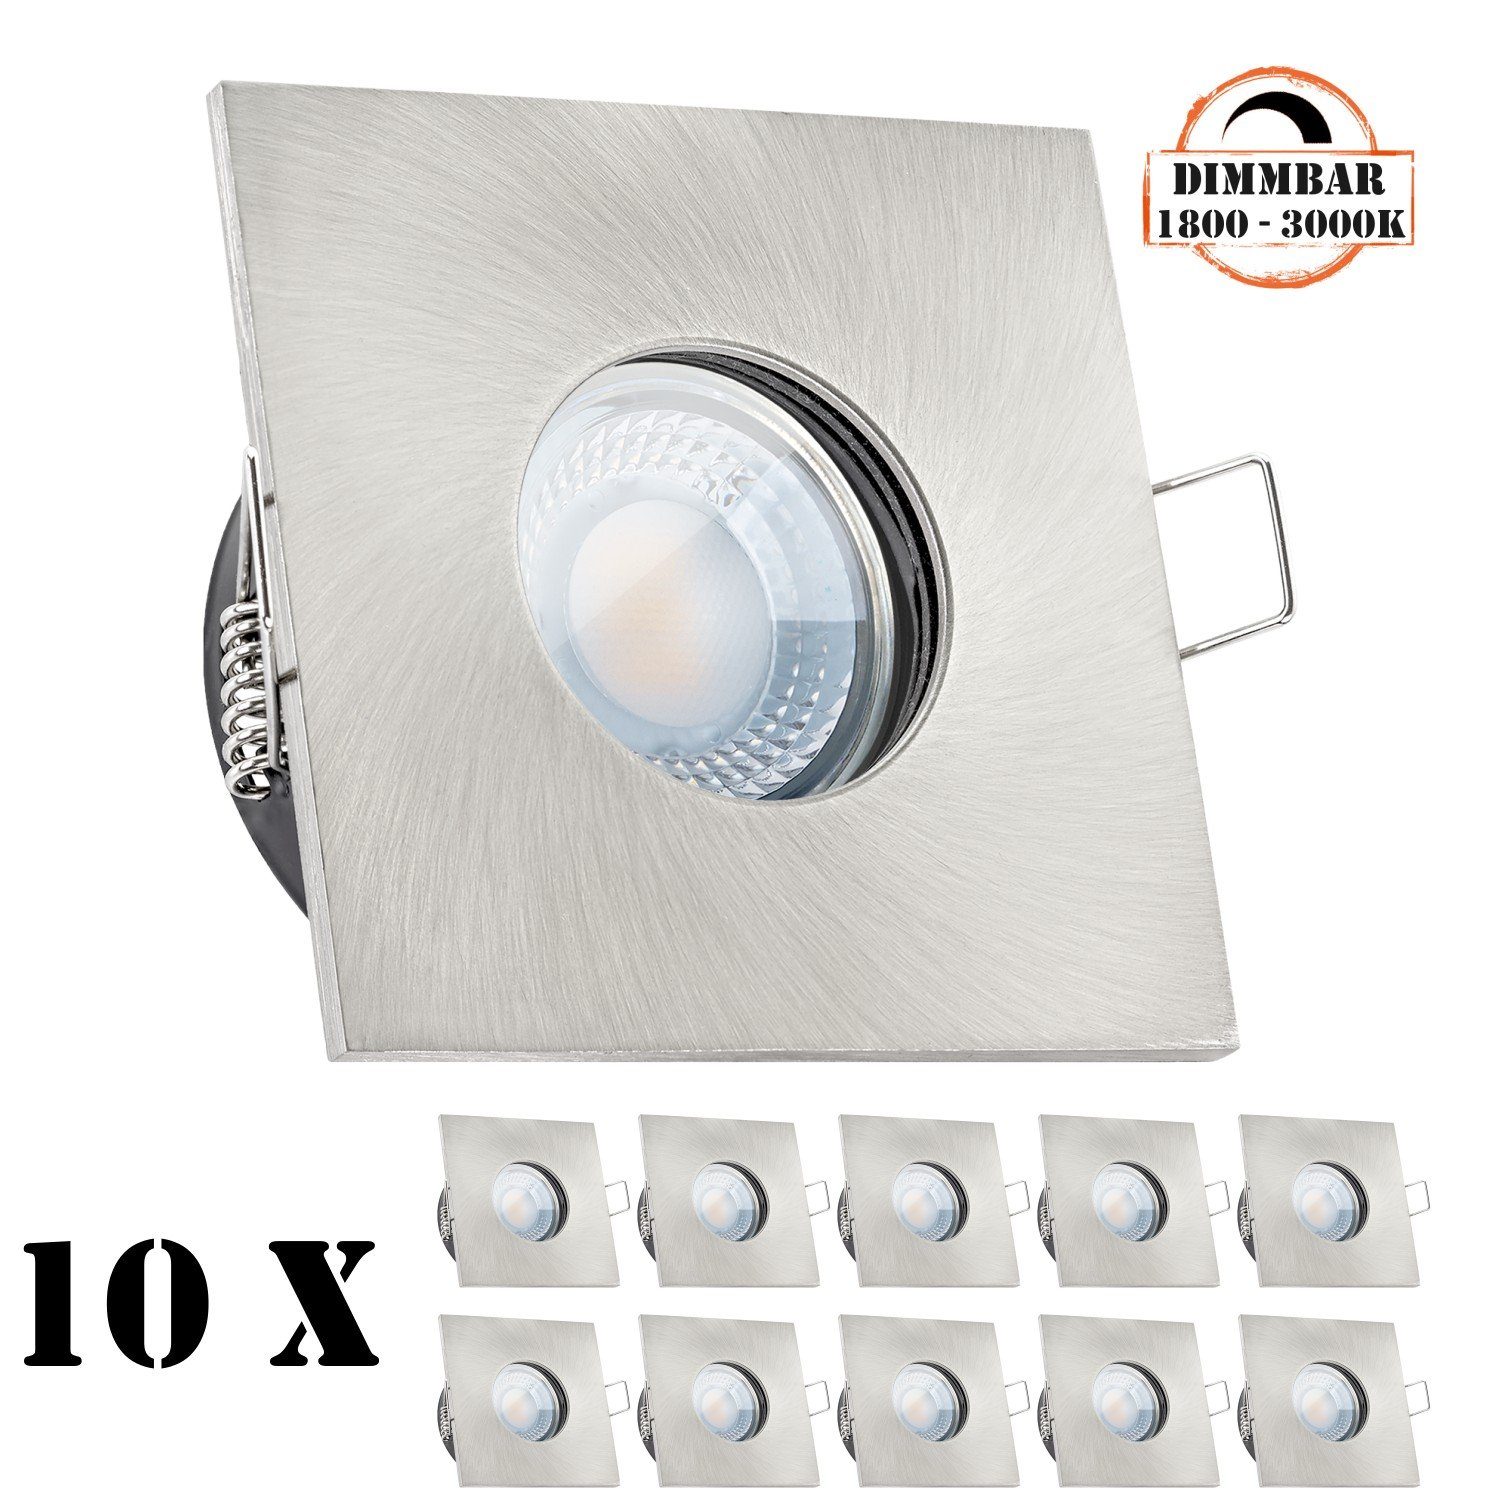 LEDANDO LED Einbaustrahler 10er IP65 LED Einbaustrahler Set extra flach in  edelstahl / silber gebürstet mit 5W LED von LEDANDO - dimmbare  Farbtemperatur 1800-3000K Warmweiß - 60° Abstrahlwinkel - 50W Ersatz -  dimmbar - eckig - Badezimmer